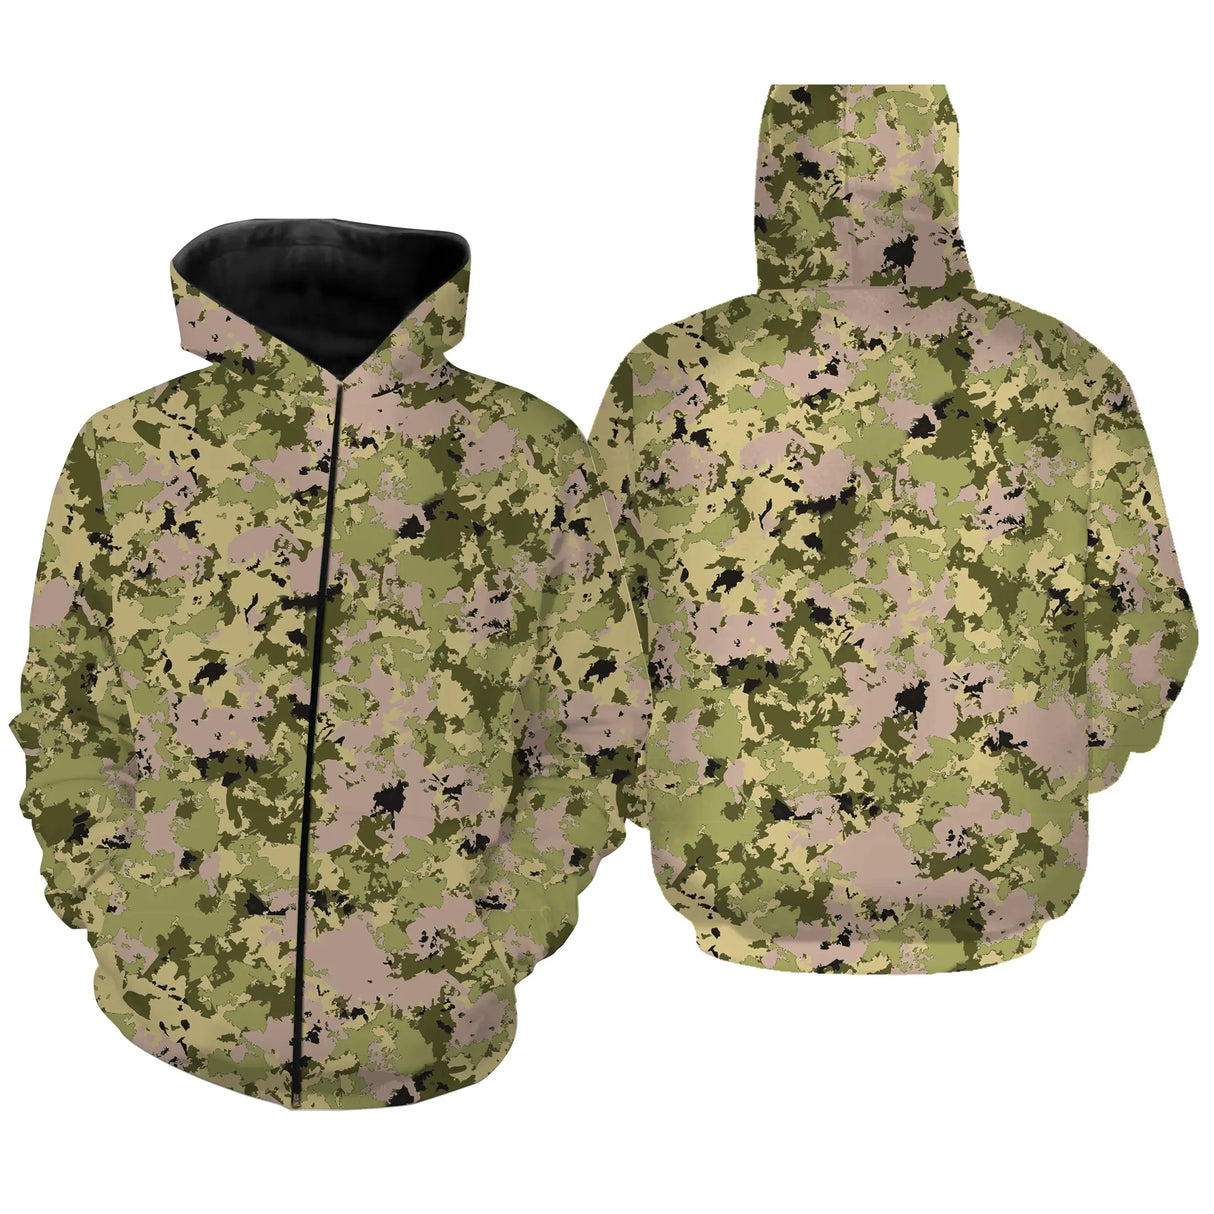 Vêtements Camouflage Pêche et Chasse, Cadeau Pêcheur, Chasseur, T-shirt Camouflage, Sweat à Capuche Anti-UV - CT06072229